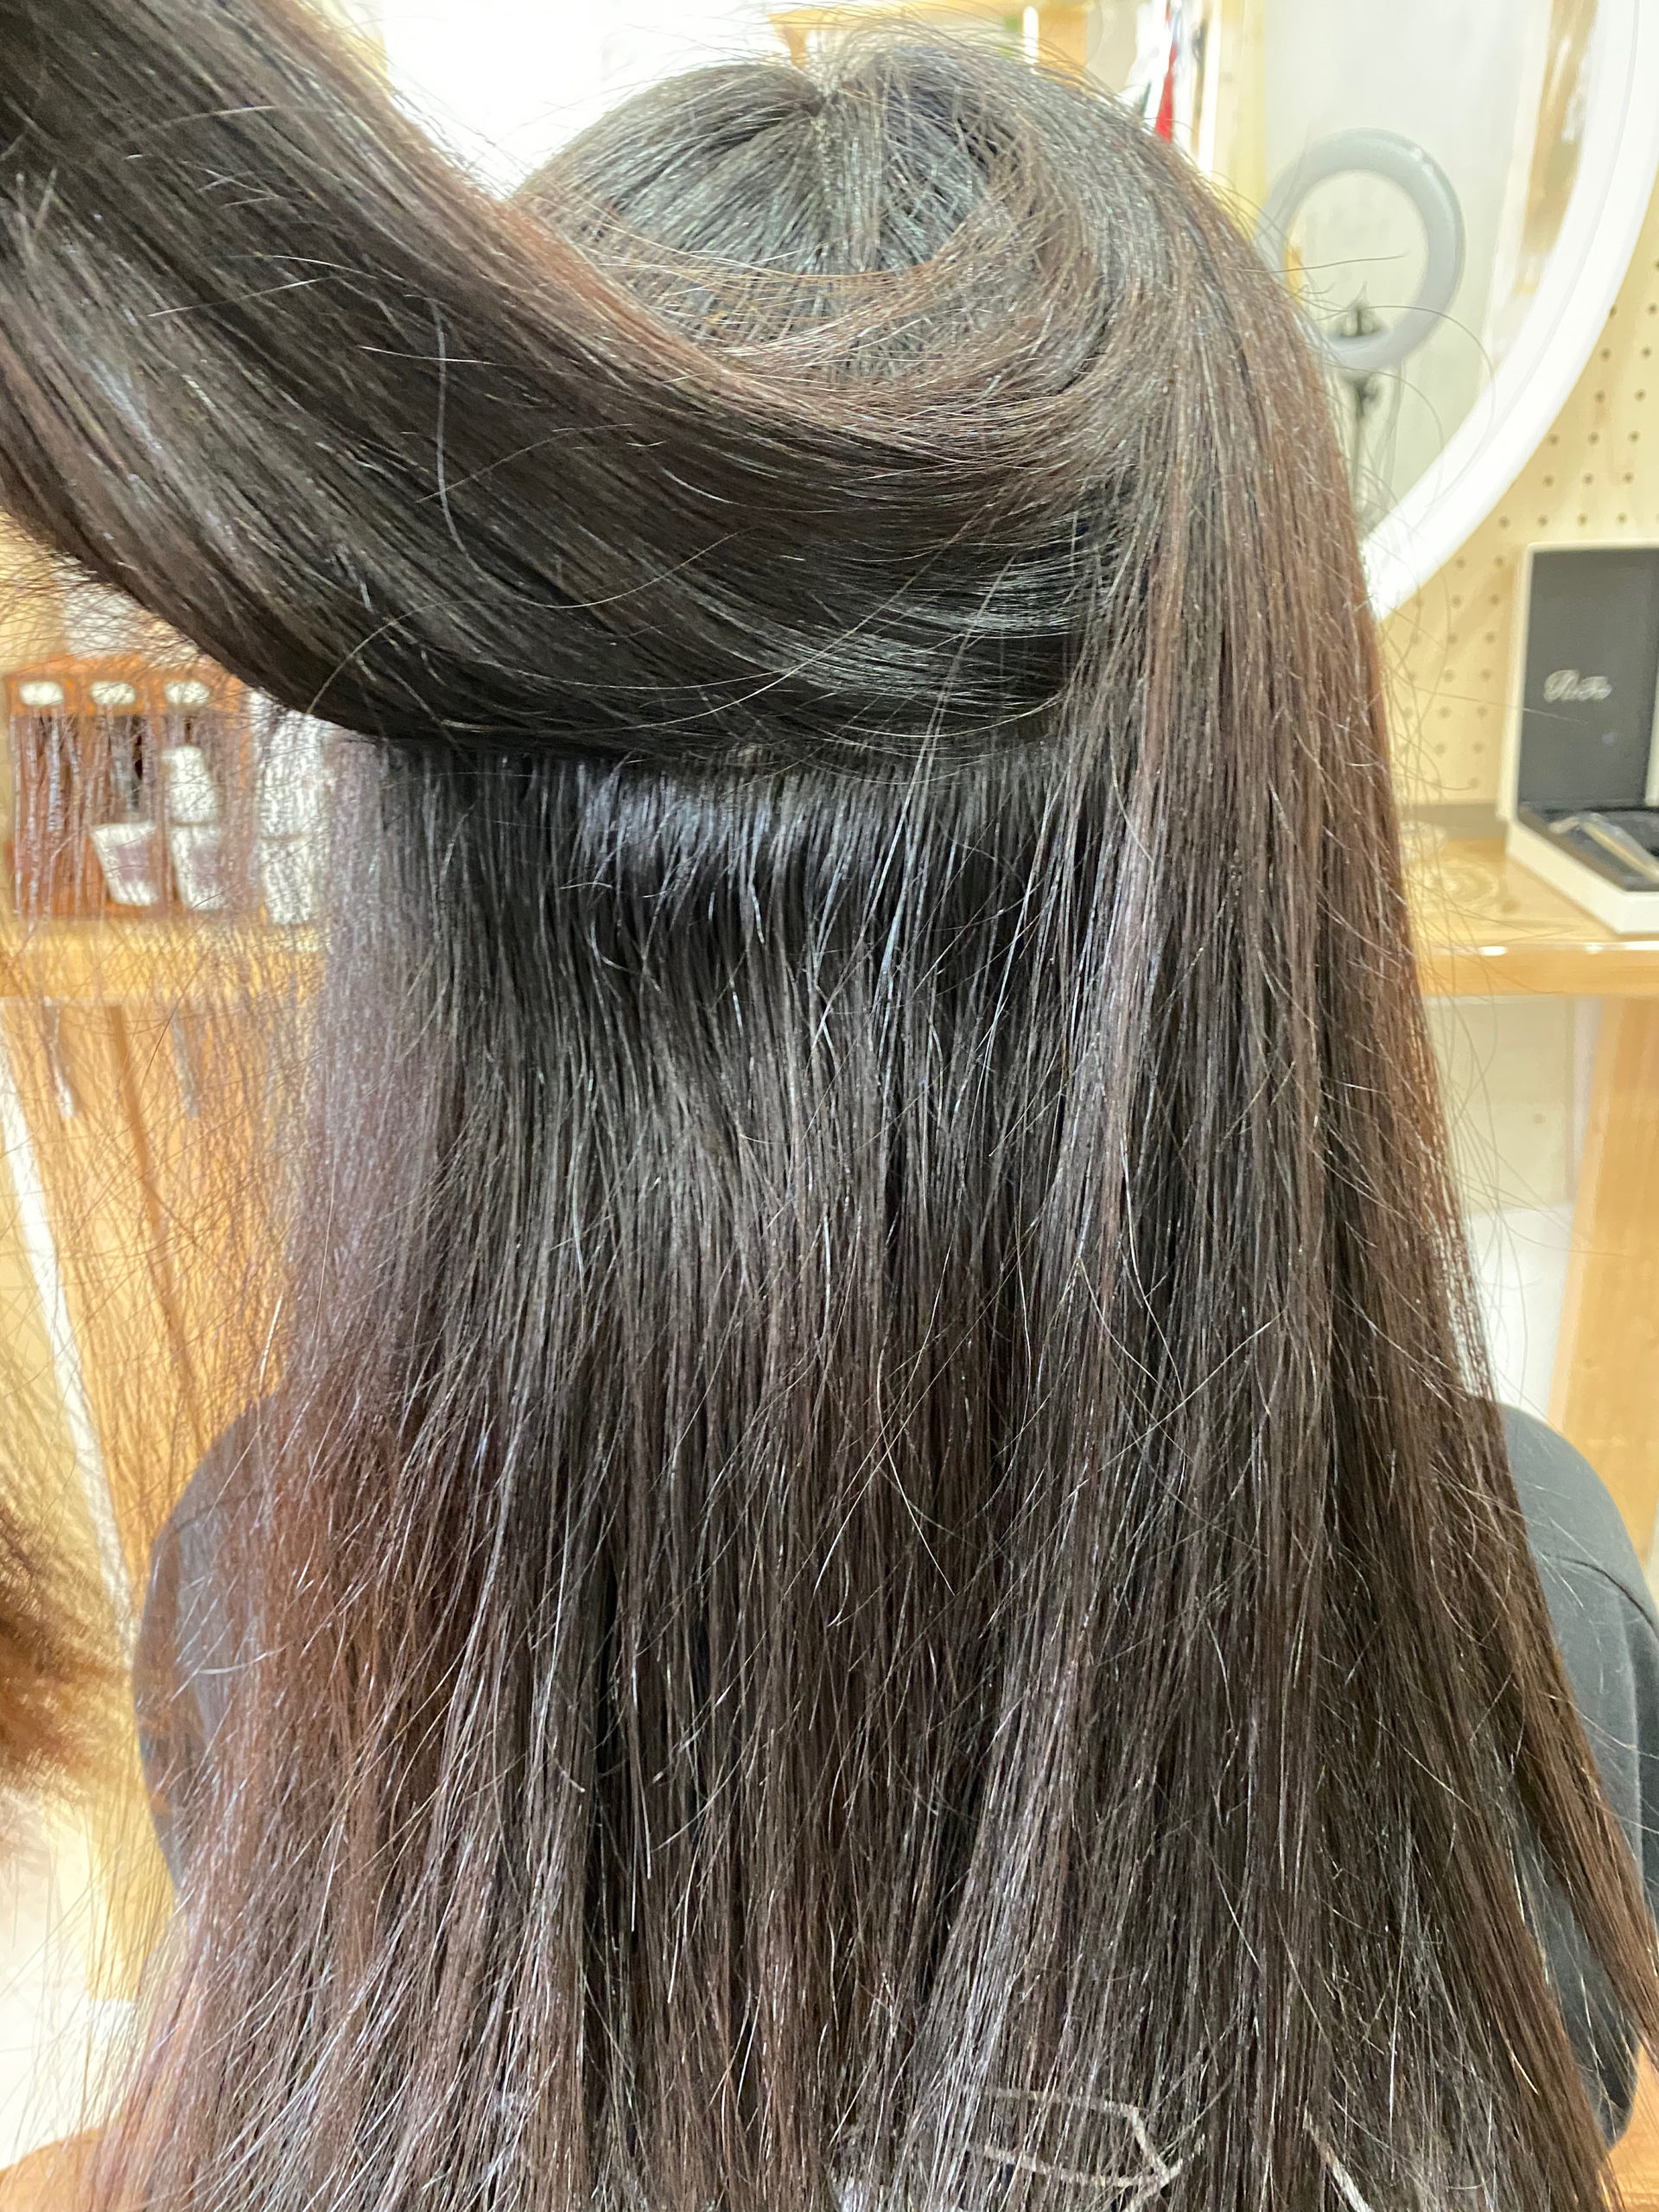 LULUトリートメント×縮毛矯正で毛先まで艶髪ストレートヘア。原宿・表参道『髪のお悩みを解決するヘアケア美容師の挑戦』